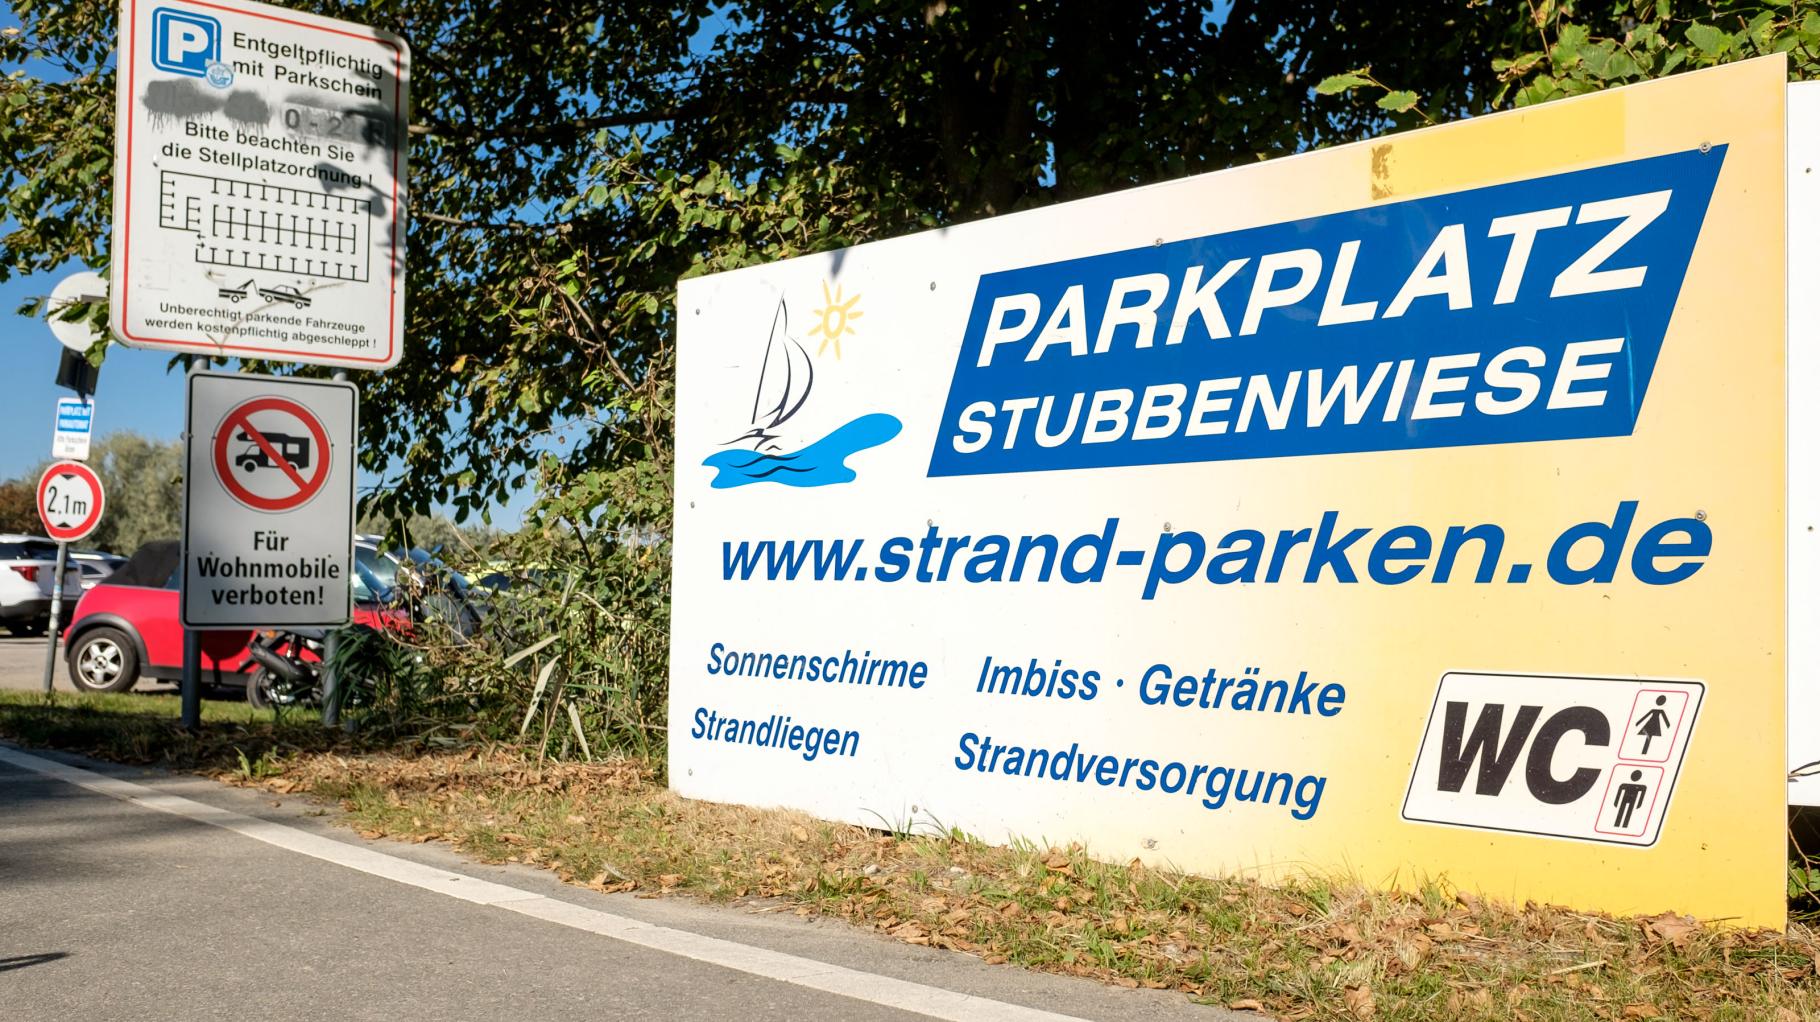 Parkplatz Stubbenwiese in Markgrafenheide soll umgestaltet werden